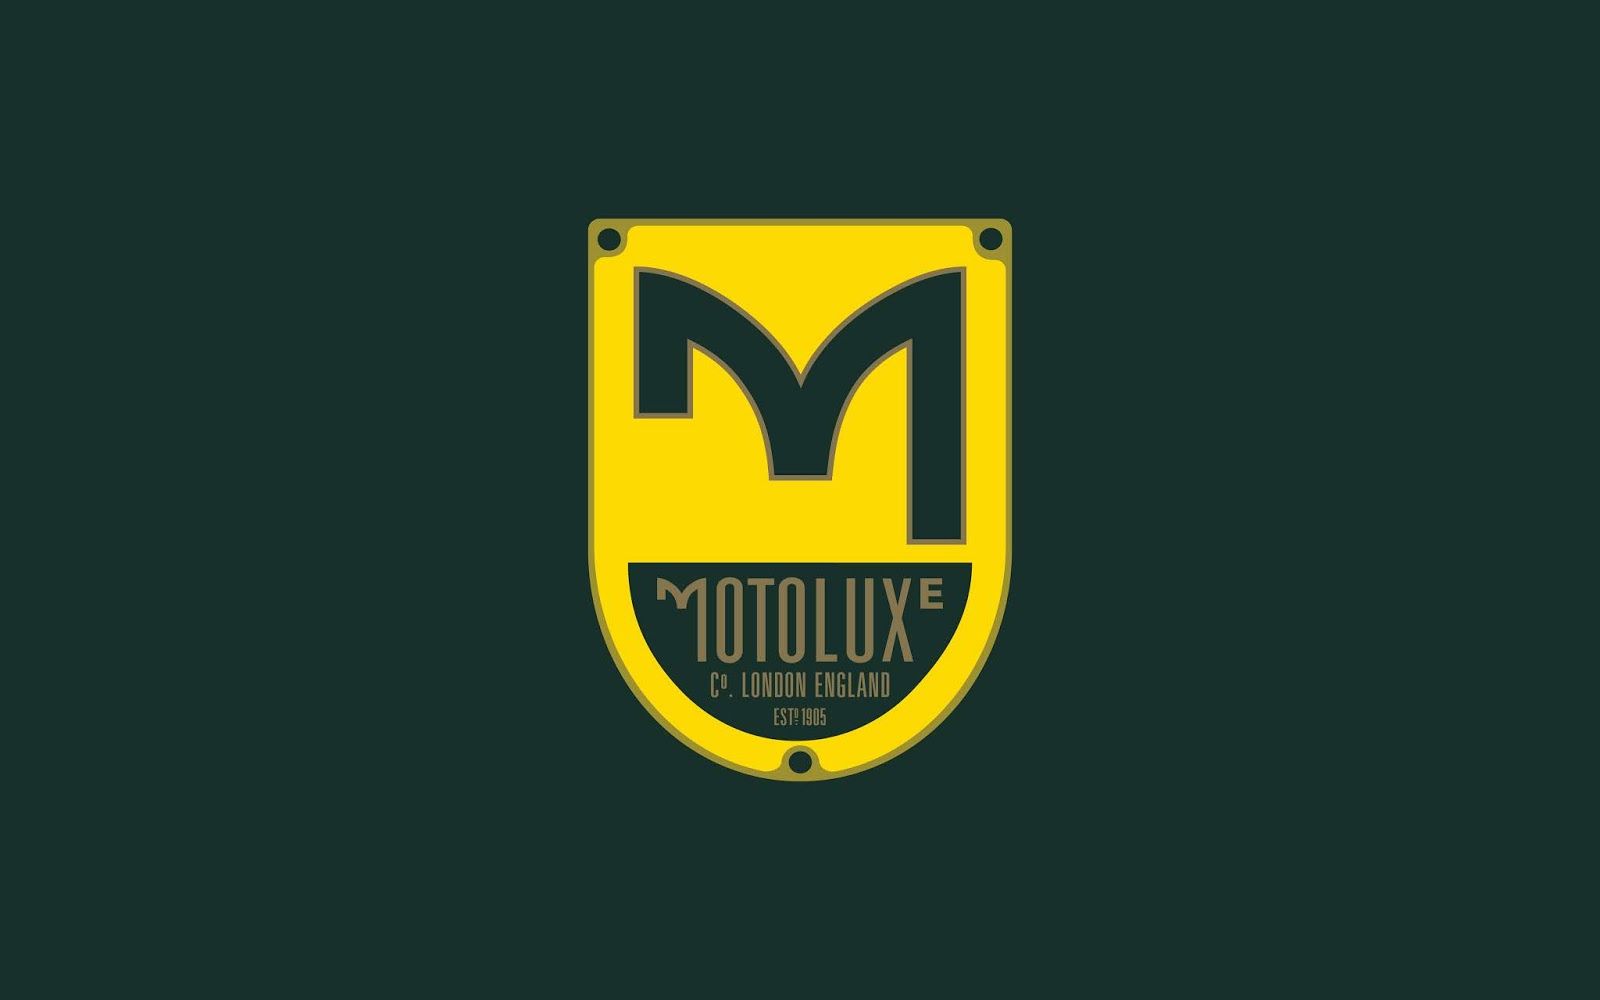 服饰品牌Motoluxe视觉形象设计